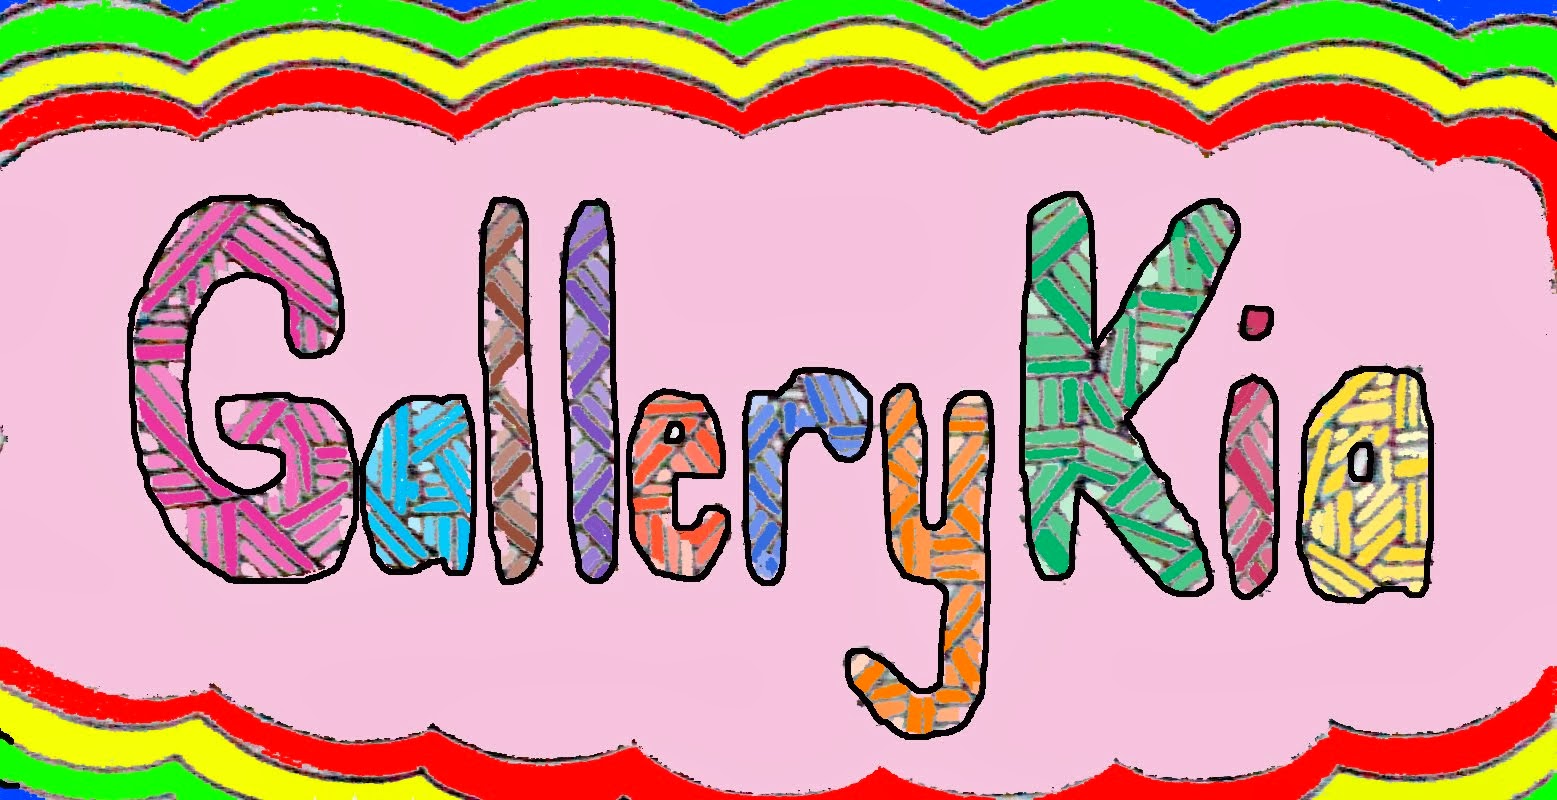 Gallery Kia